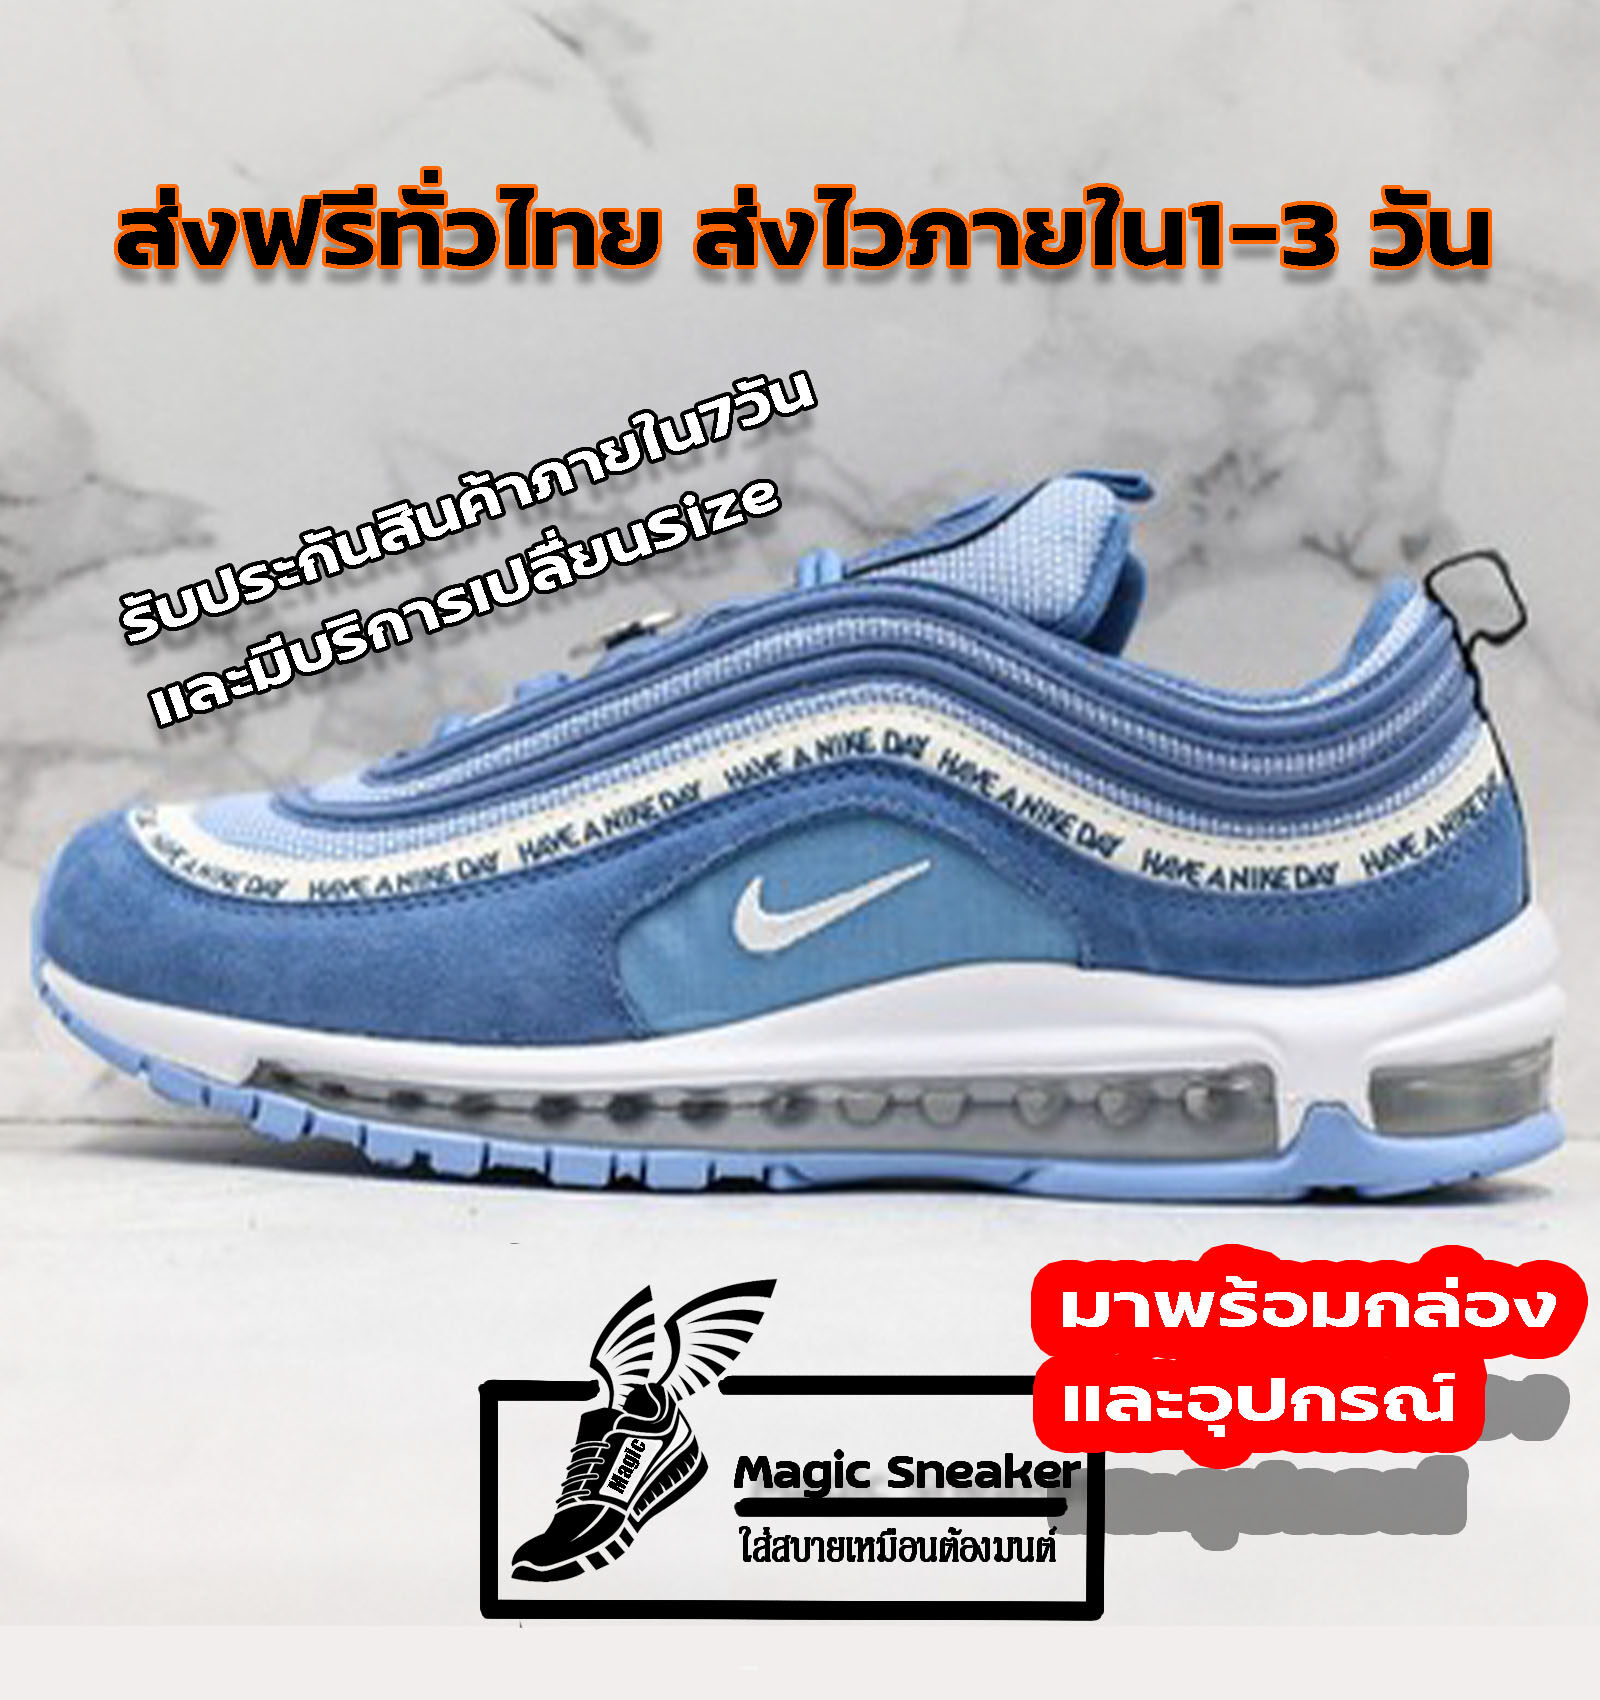 [ลดอีก150 เมือกดติดตาม] Nike Air Max 97 “BLUE HAVE A NIKE DAY” (เบอร์36-40) รองเท้าผ้าใบ รองเท้าวิ่ง ชาย หญิง รองเท้ากีฬา